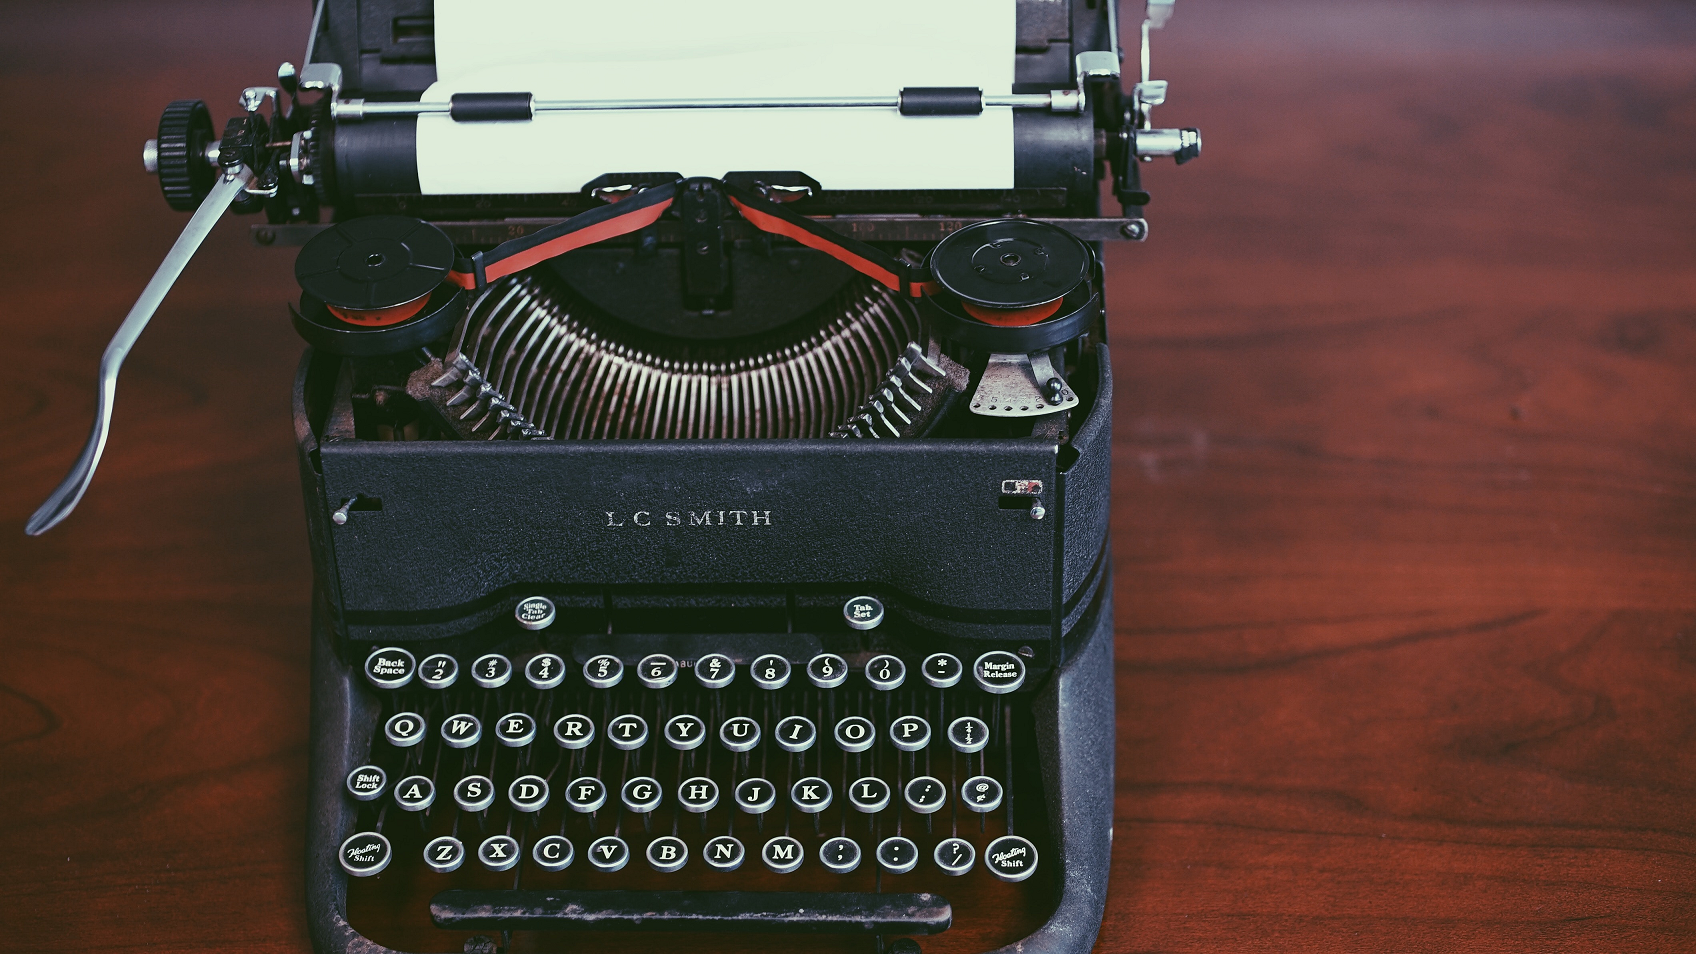 Old time typewriter on brown table